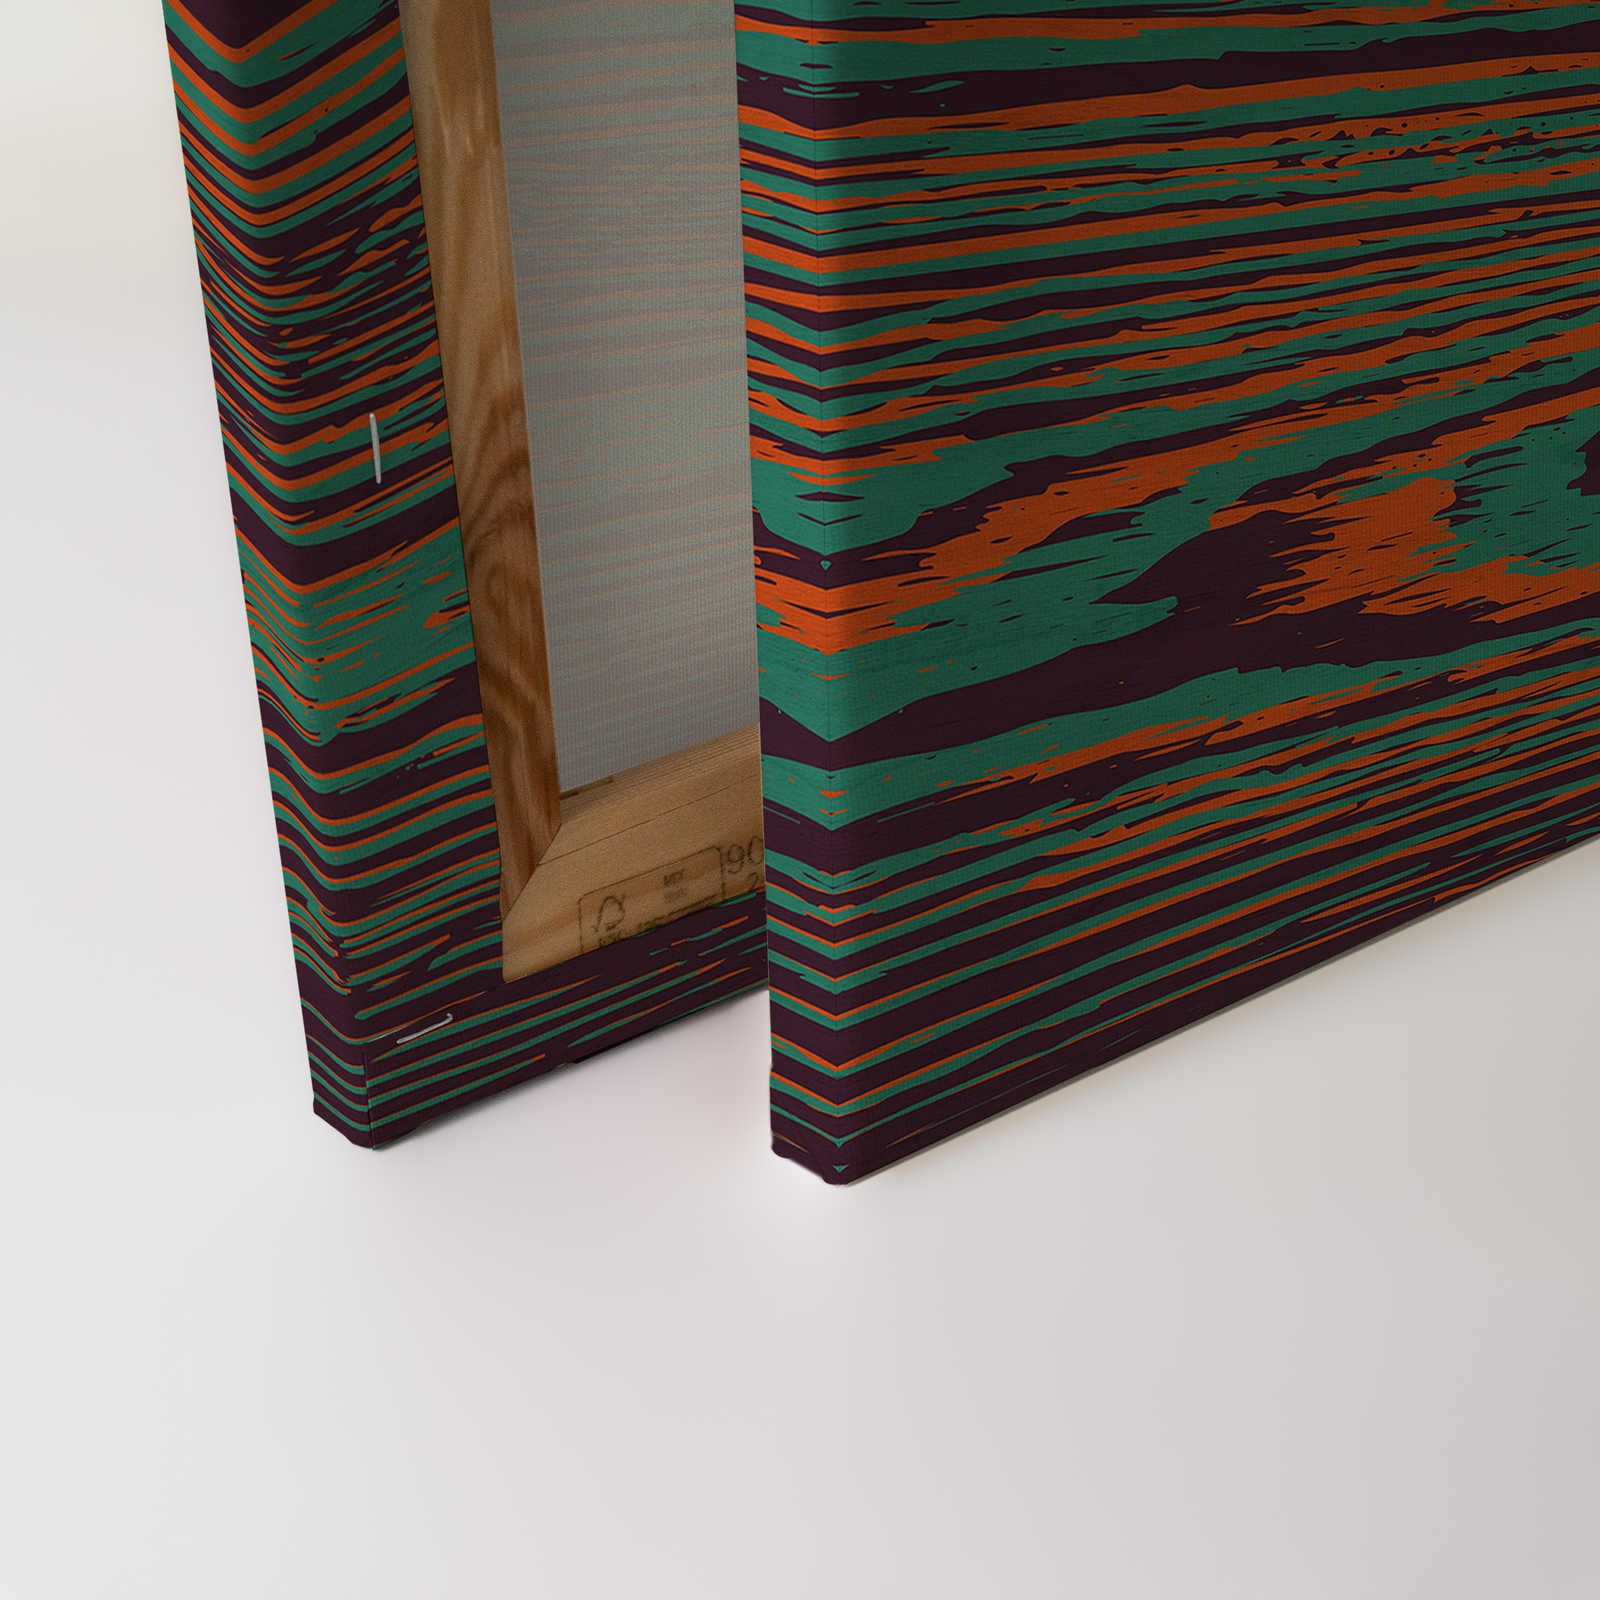             Kontiki 1 - Toile grain de bois couleurs néon, vert & noir - 0,90 m x 0,60 m
        